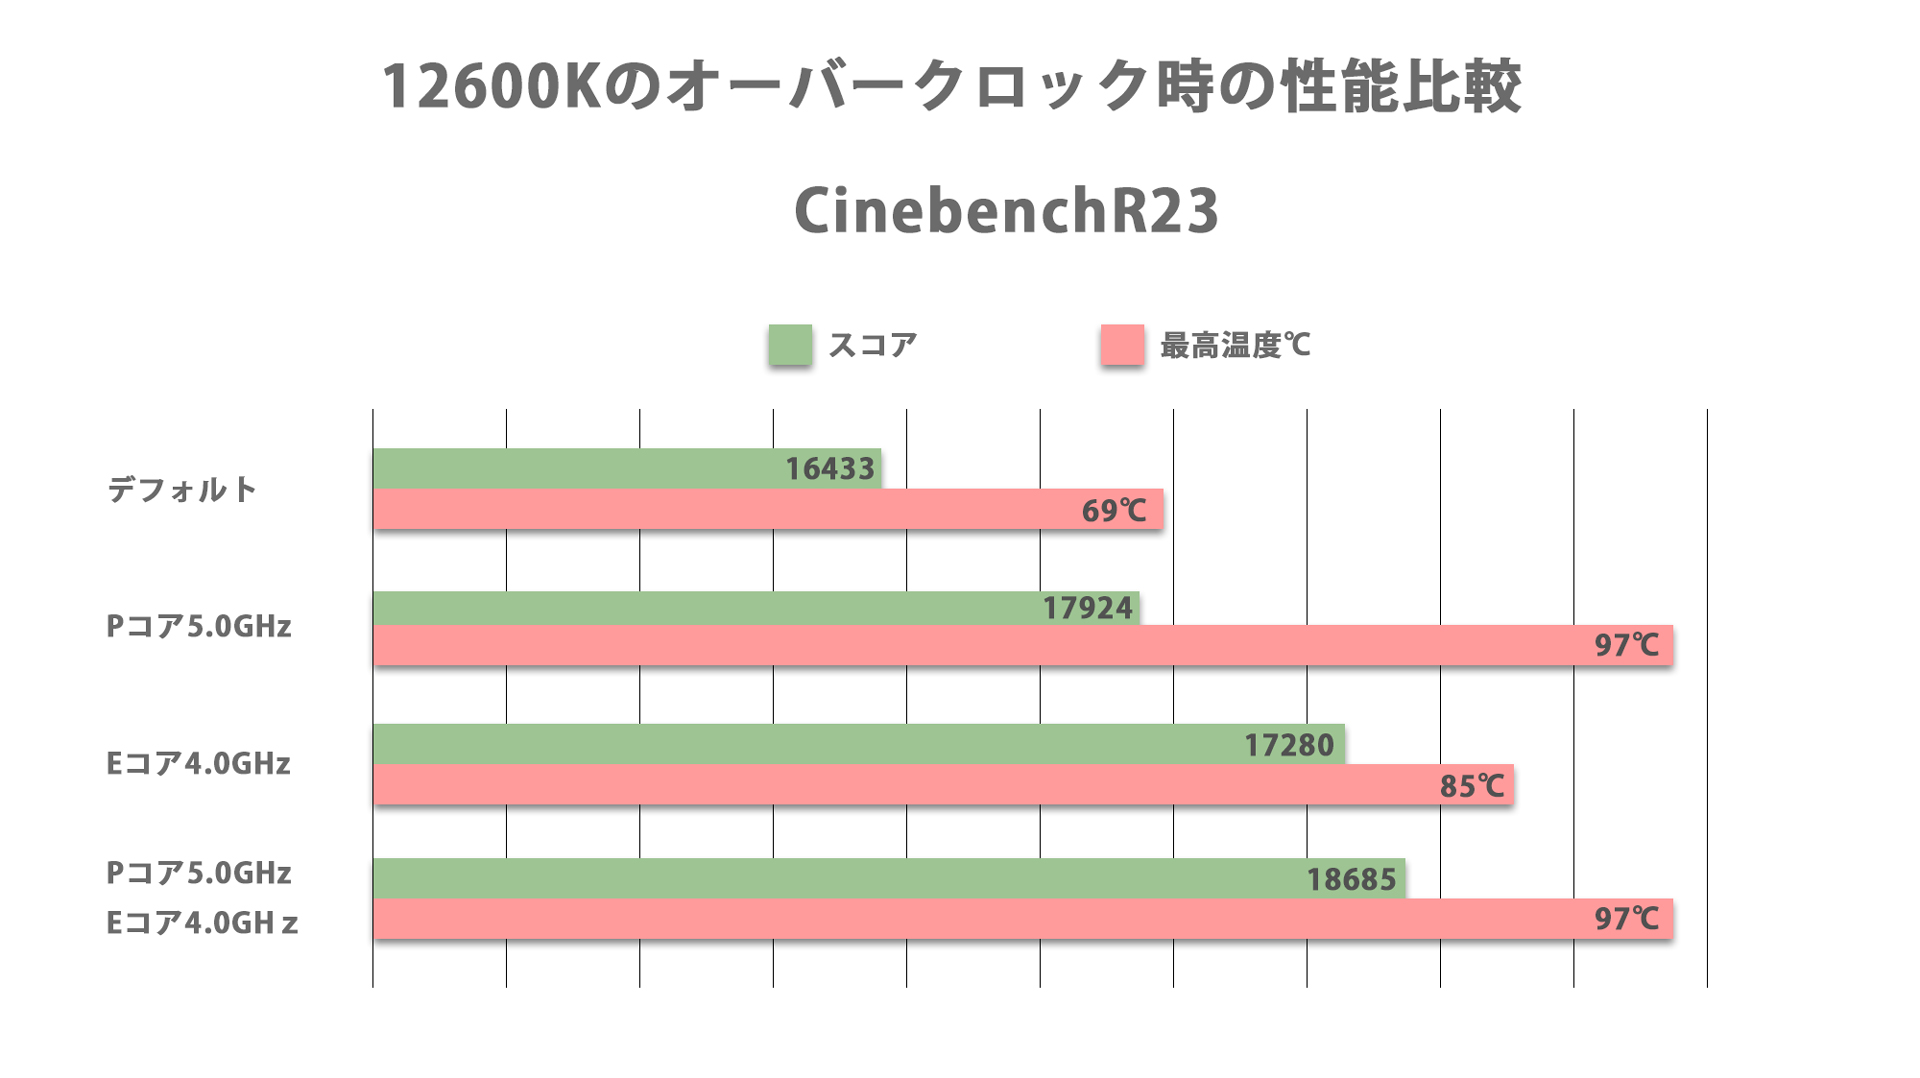 12600Kをオーバークロックした際のCinebenchR23のスコア比較。